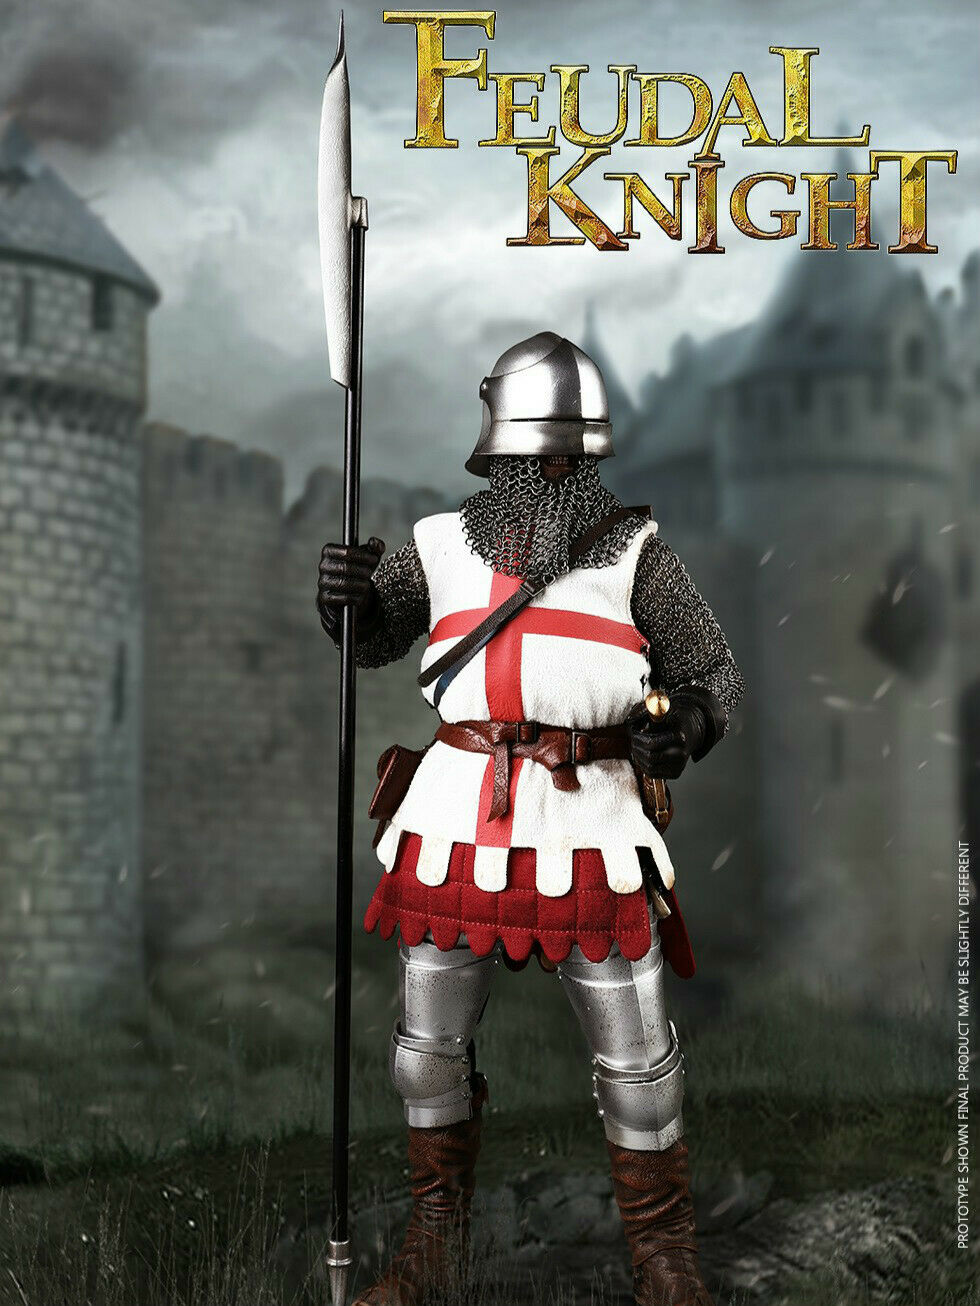 coomodel knight